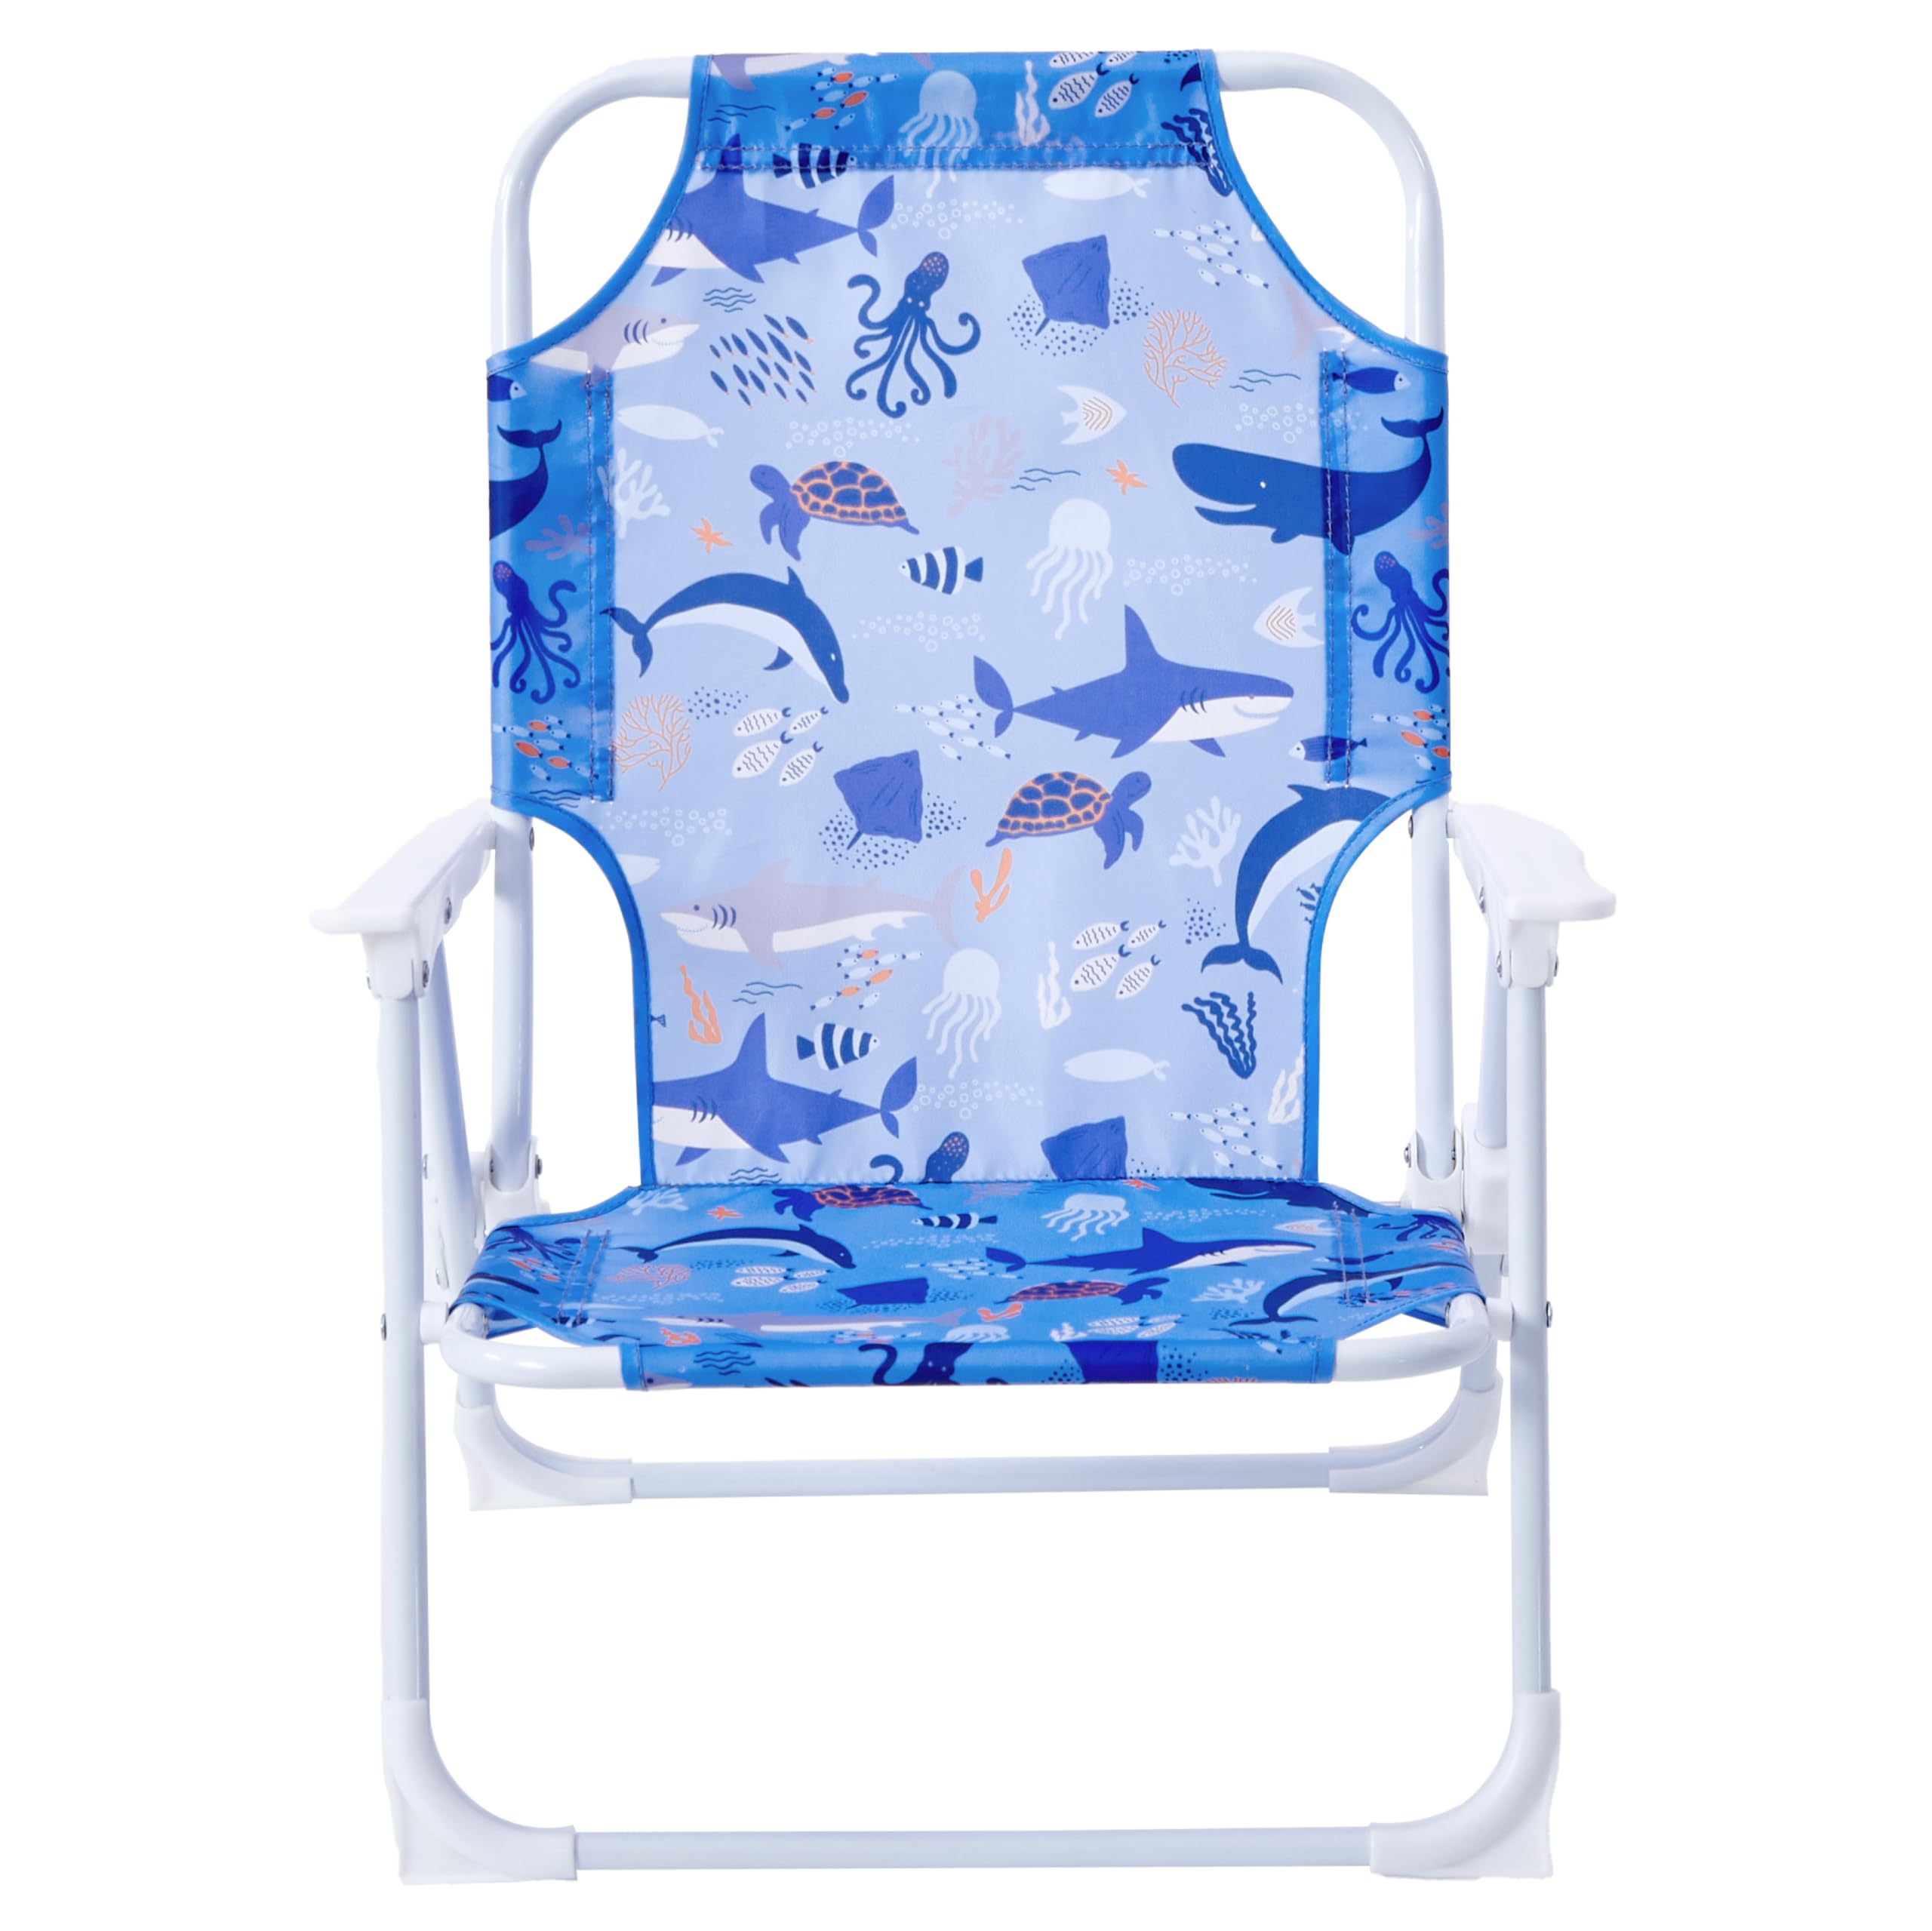 Idea Nuova Kids Outdoor Beach Chair, 12